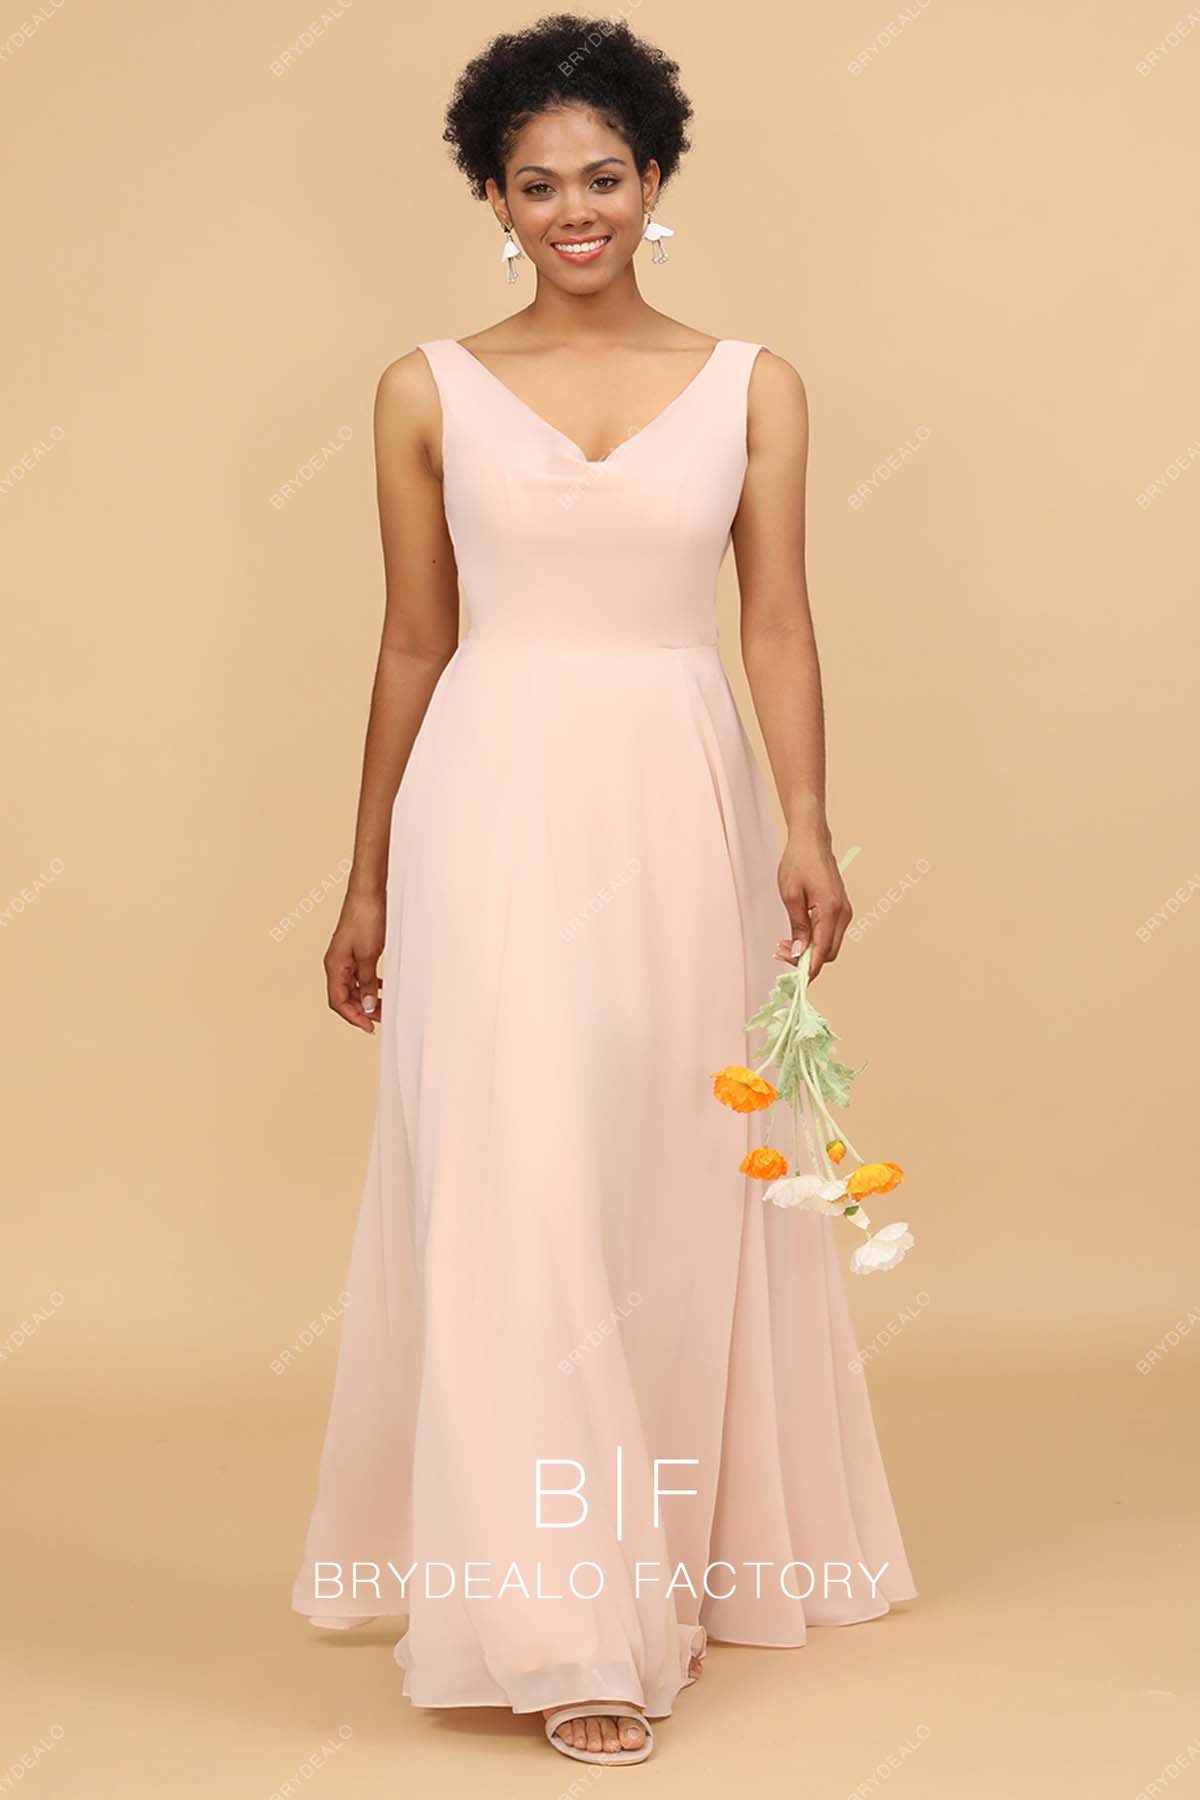 V-neck chiffon pink long bridesmaid dress